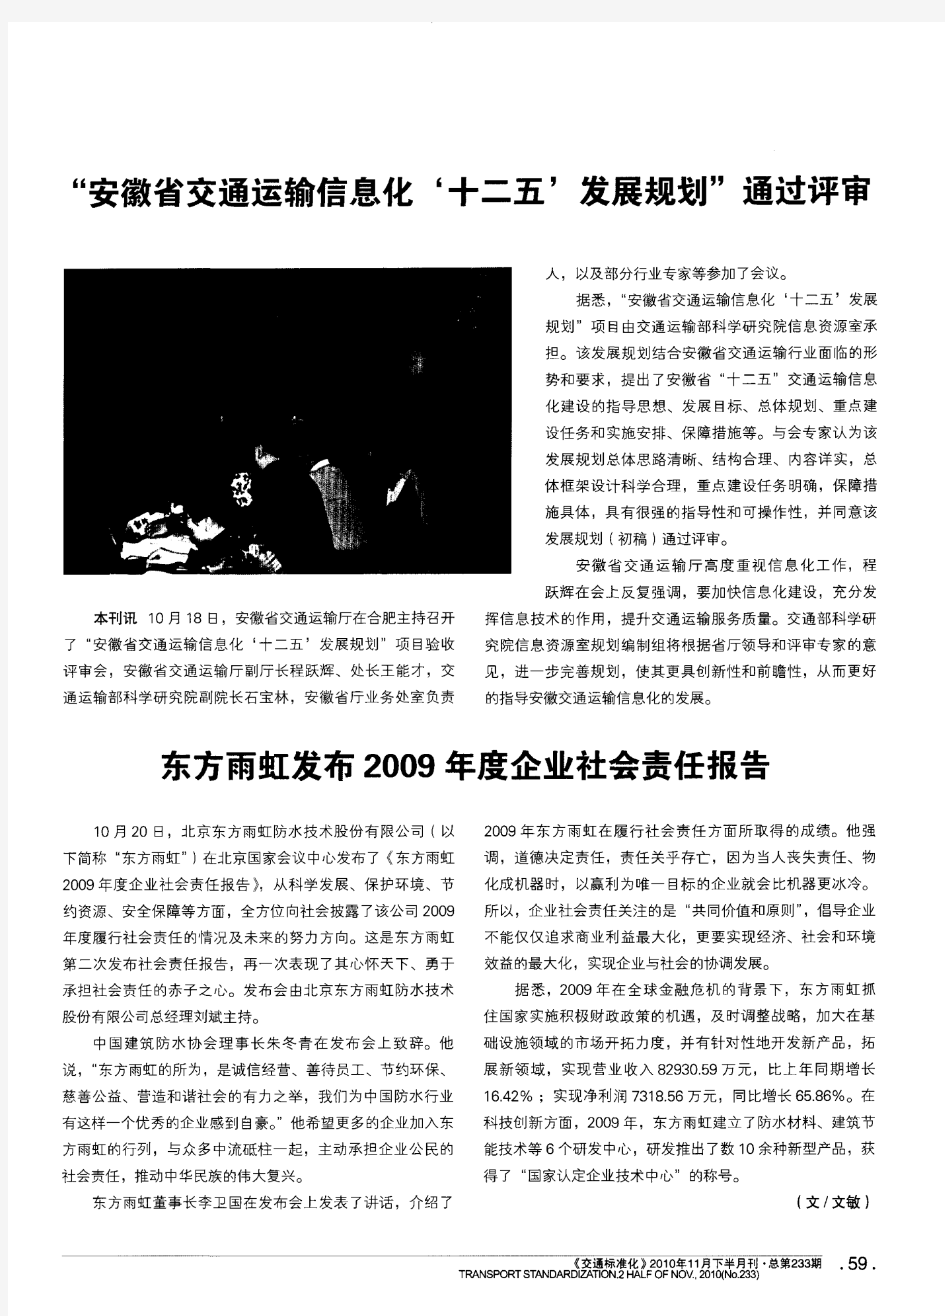 东方雨虹发布2009年度企业社会责任报告